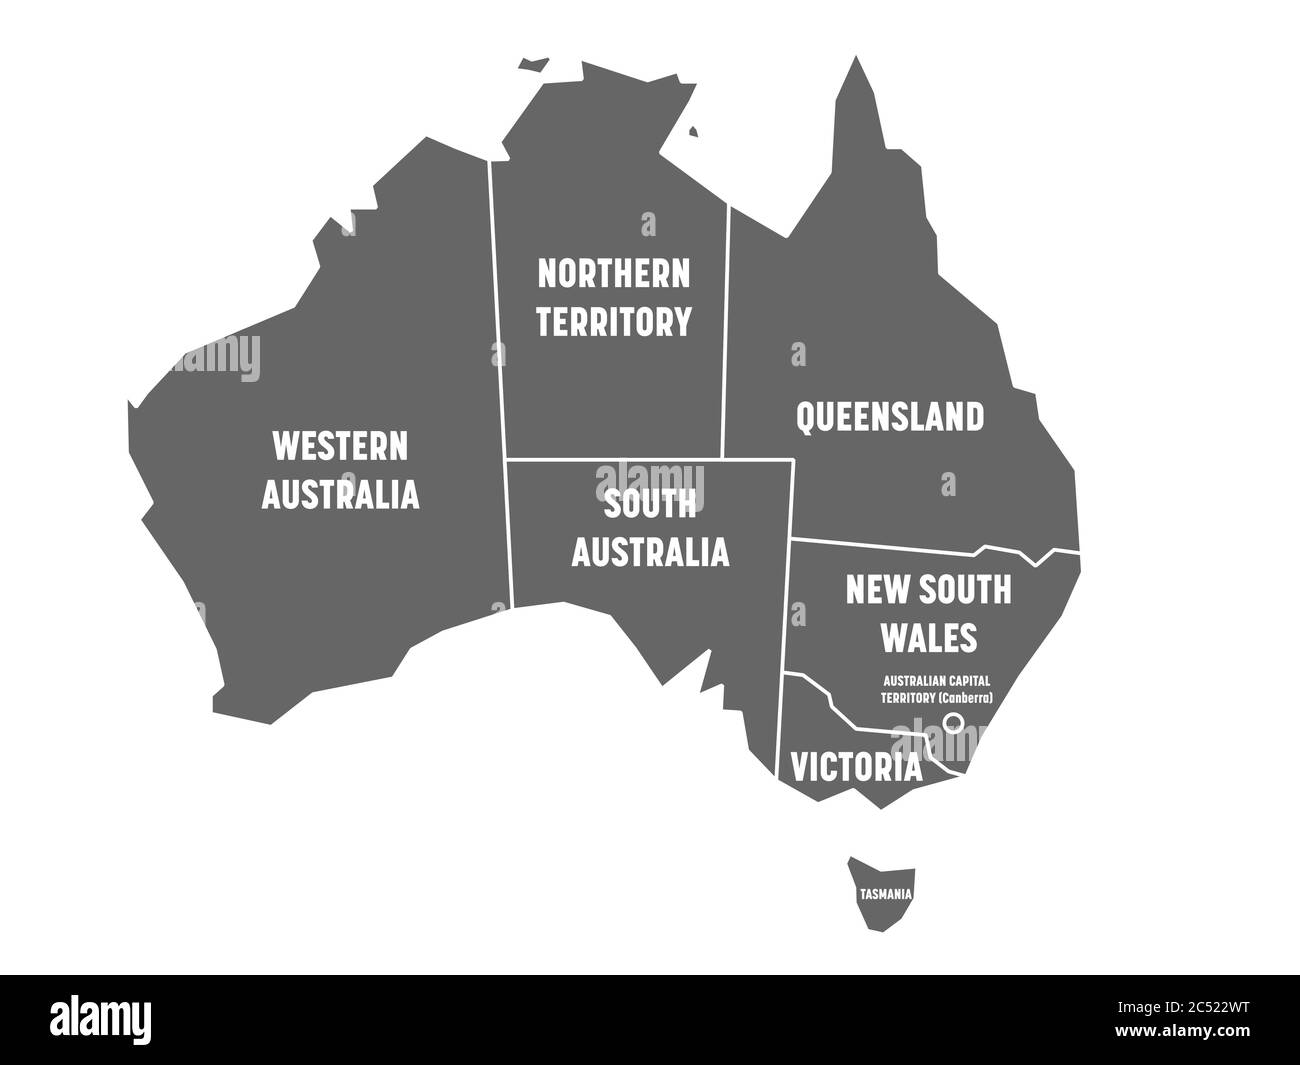 Mappa semplificata dell'Australia divisa in stati e territori. Mappa piatta grigia con bordi bianchi ed etichette bianche. Illustrazione vettoriale. Illustrazione Vettoriale